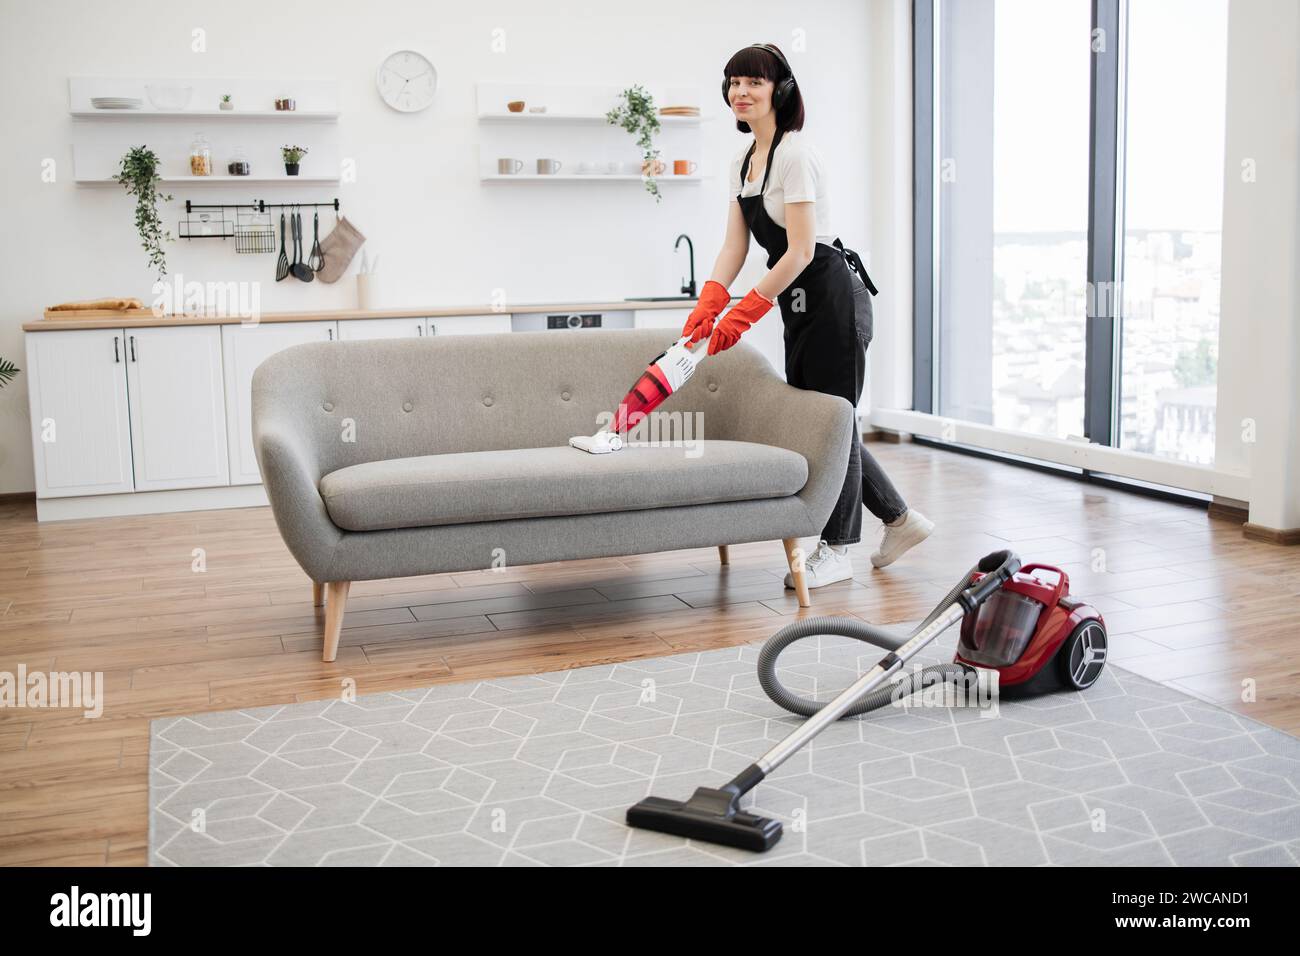 El limpiador del servicio de limpieza doméstica está eliminando la suciedad  y el polvo del sofá usando una máquina de extracción de limpieza en seco  línea en el sofá después de la